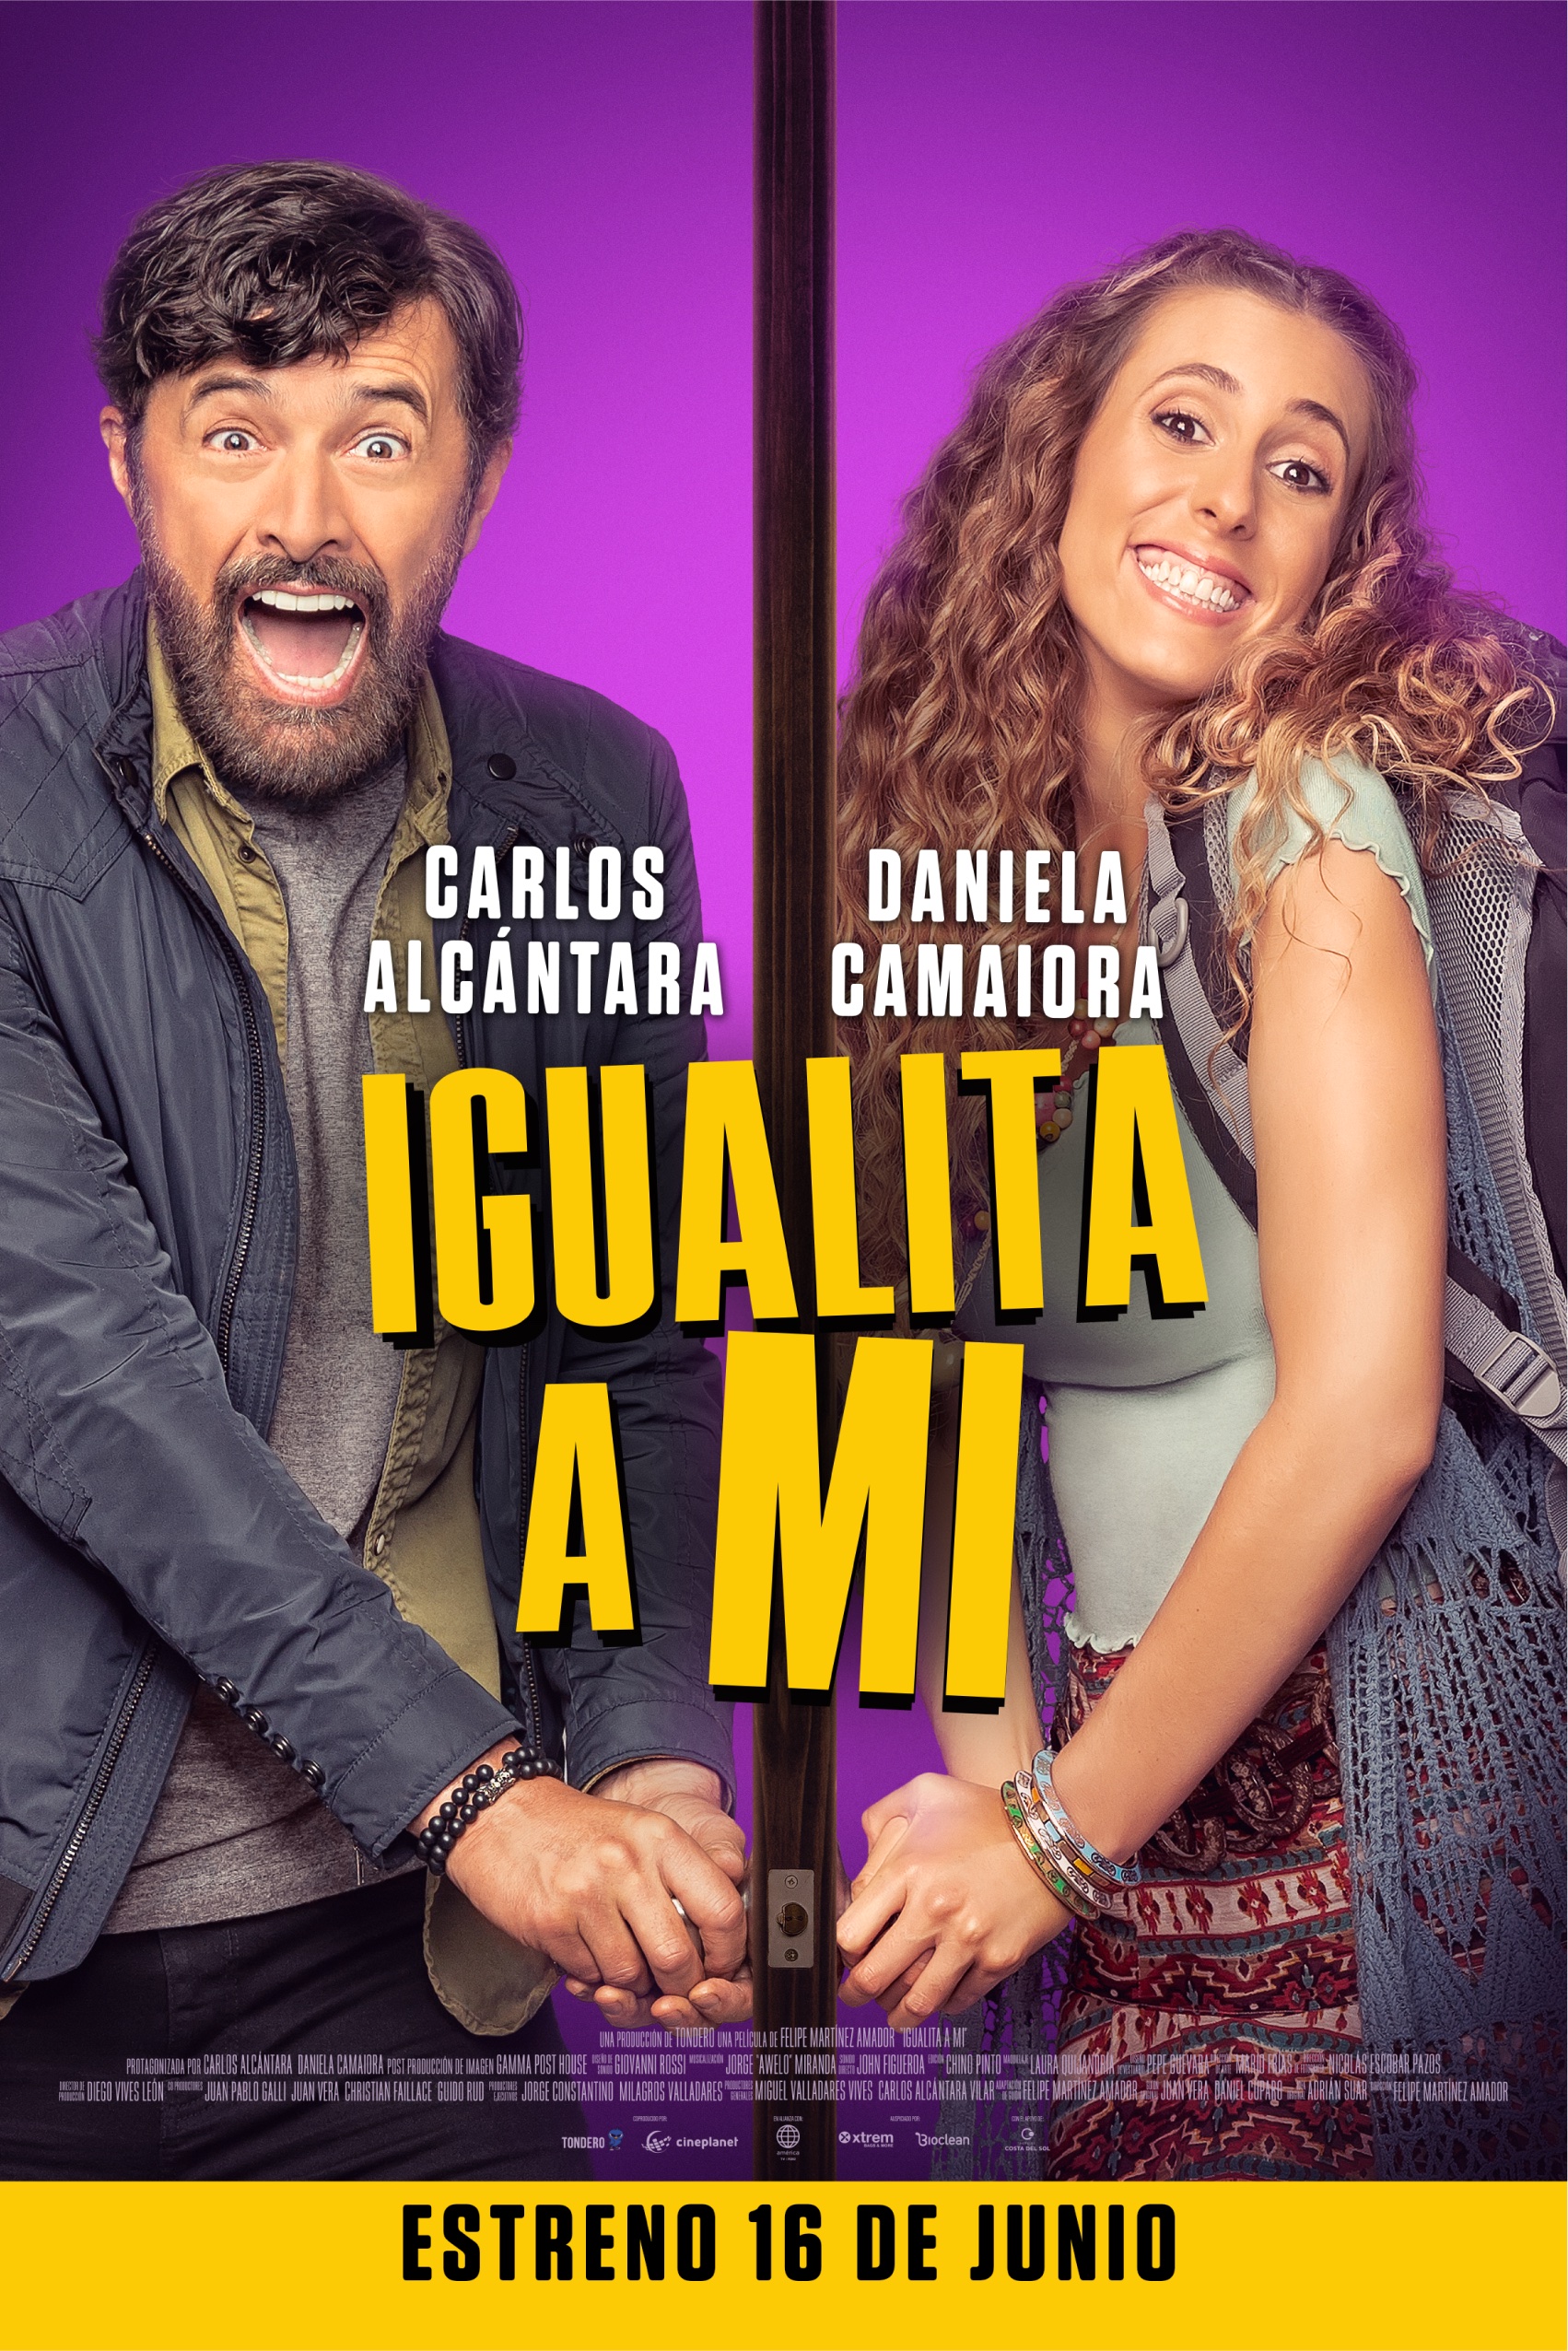 Presentan el tráiler de la película 'Igualita a mi' con Carlos Alcántara y Daniela Camaiora